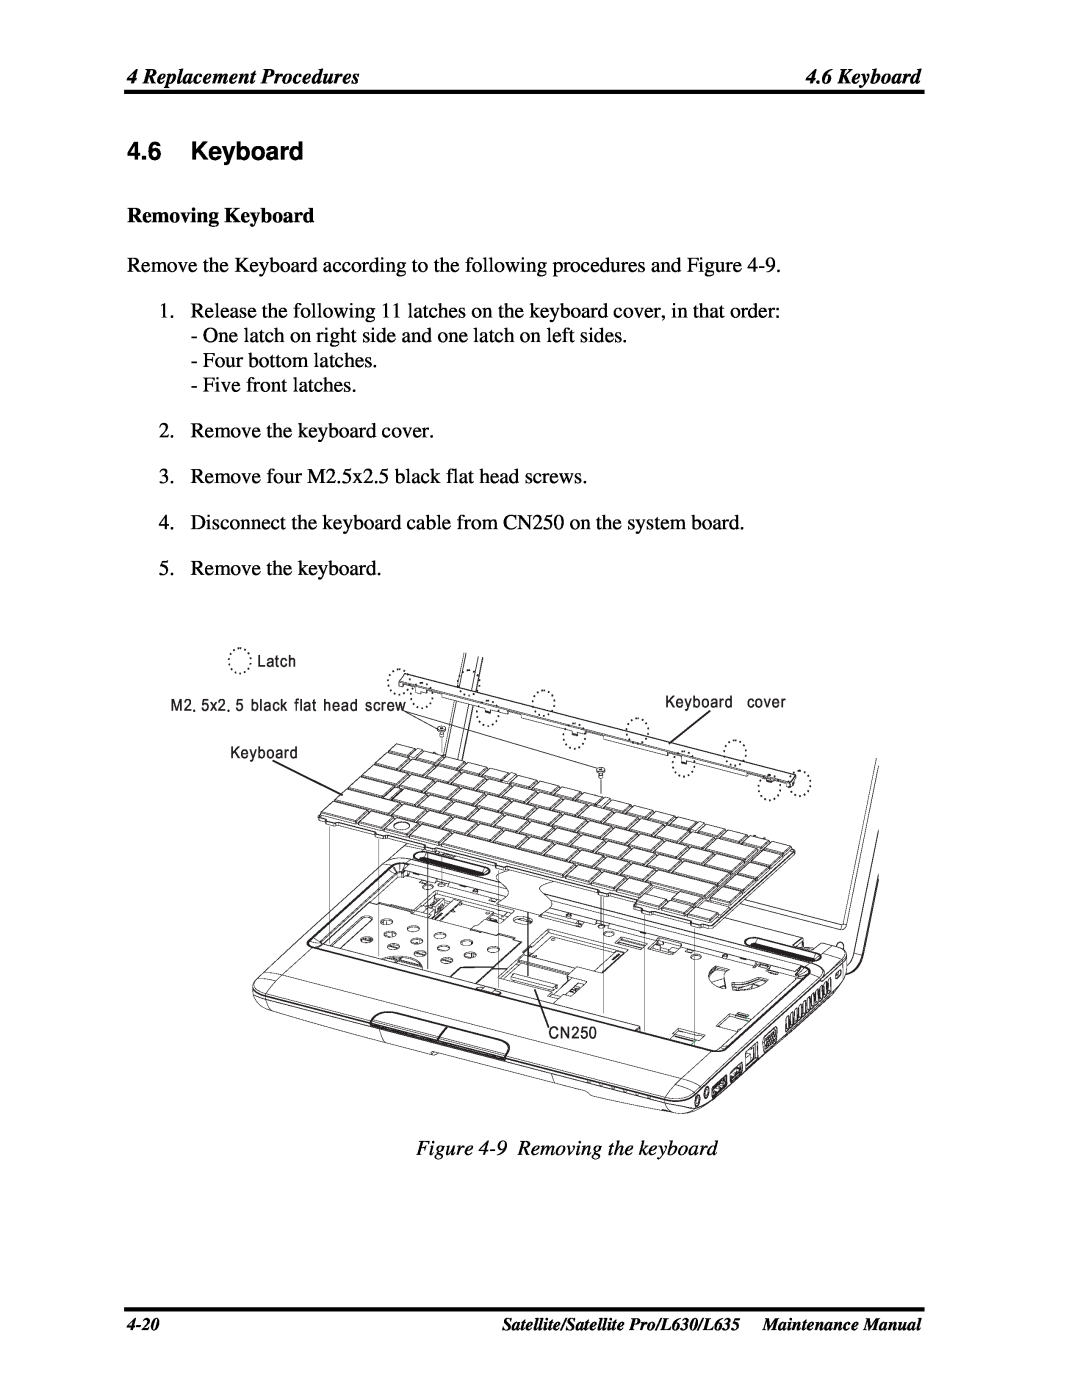 Toshiba L635, L630 manual Removing Keyboard 